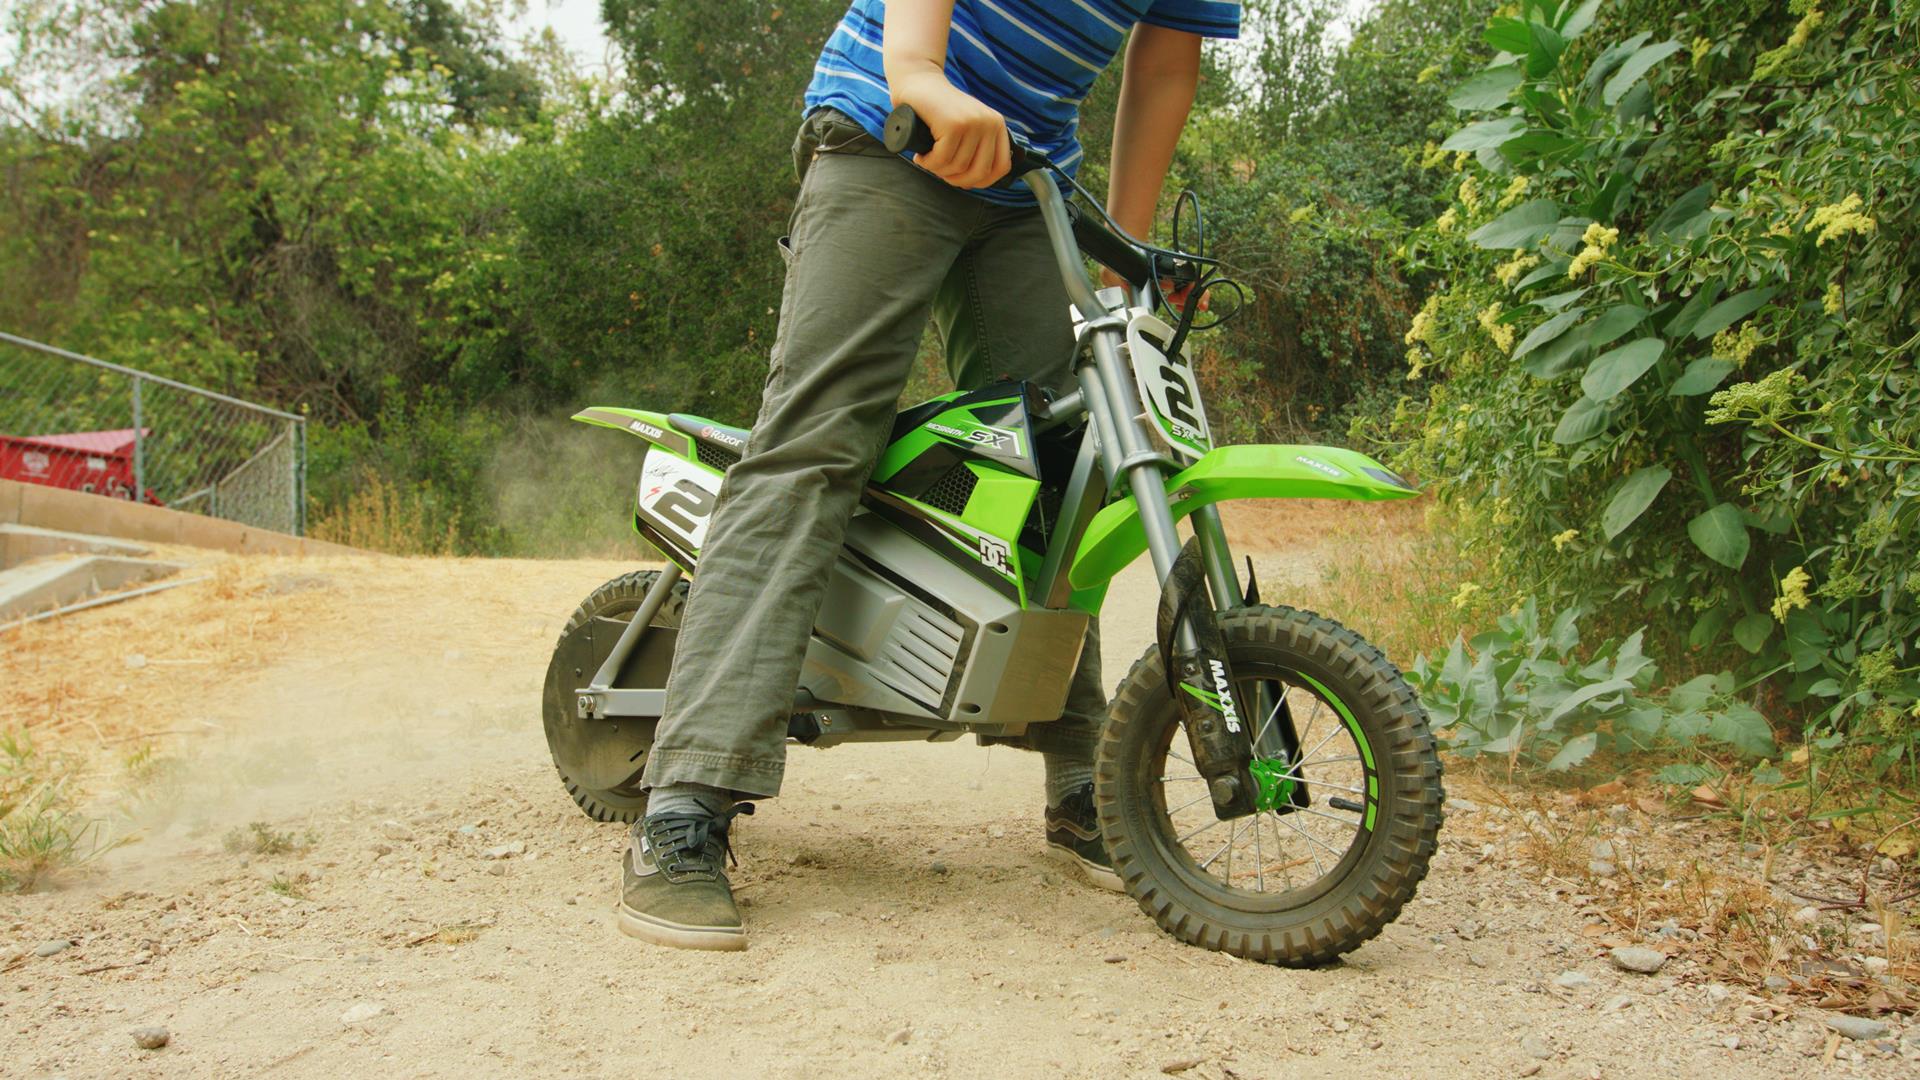 Razor Dirt Rocket SX350 McGrath Детский электрический мотоцикл, Зеленый